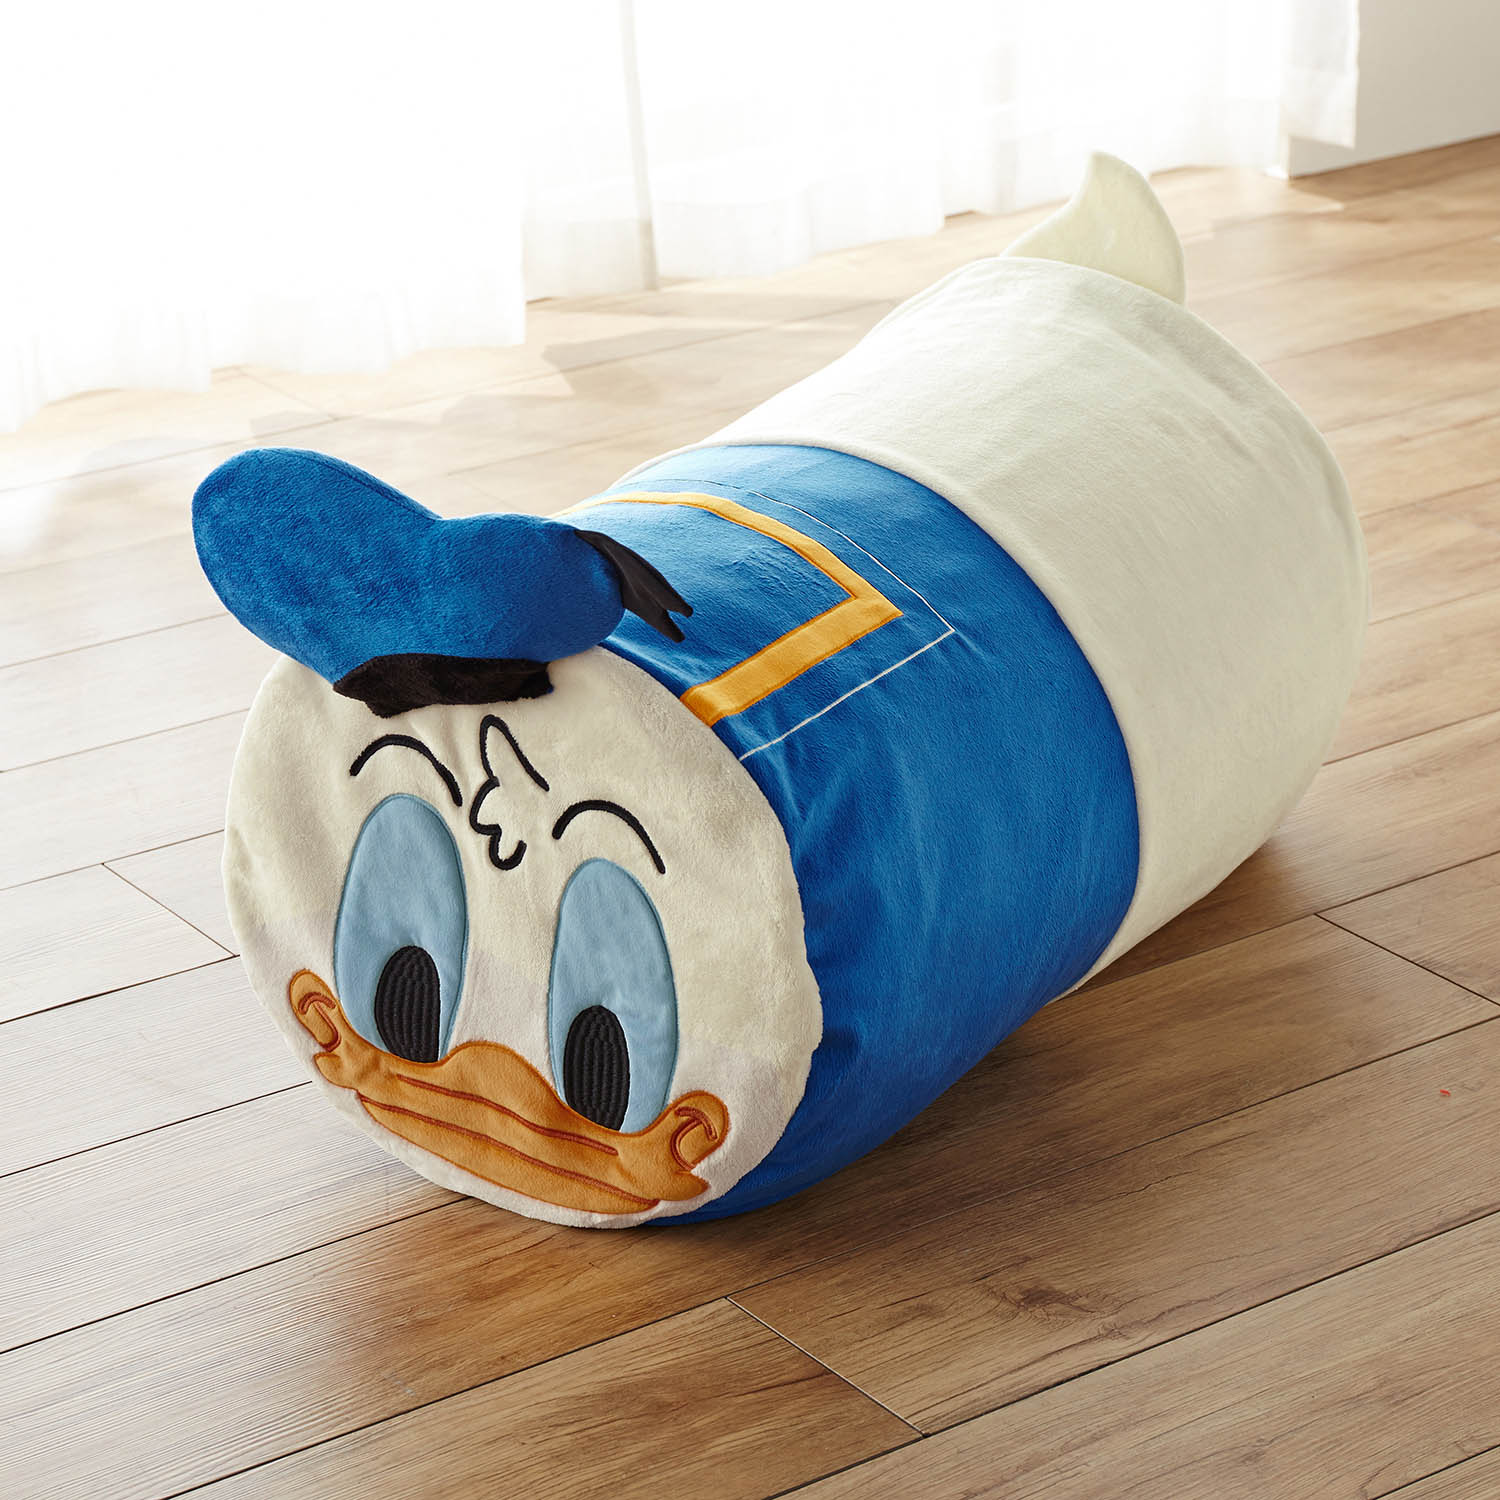 ベルメゾン ディズニー 抱き枕になる布団収納袋(選べるキャラクター) ドナルドダック